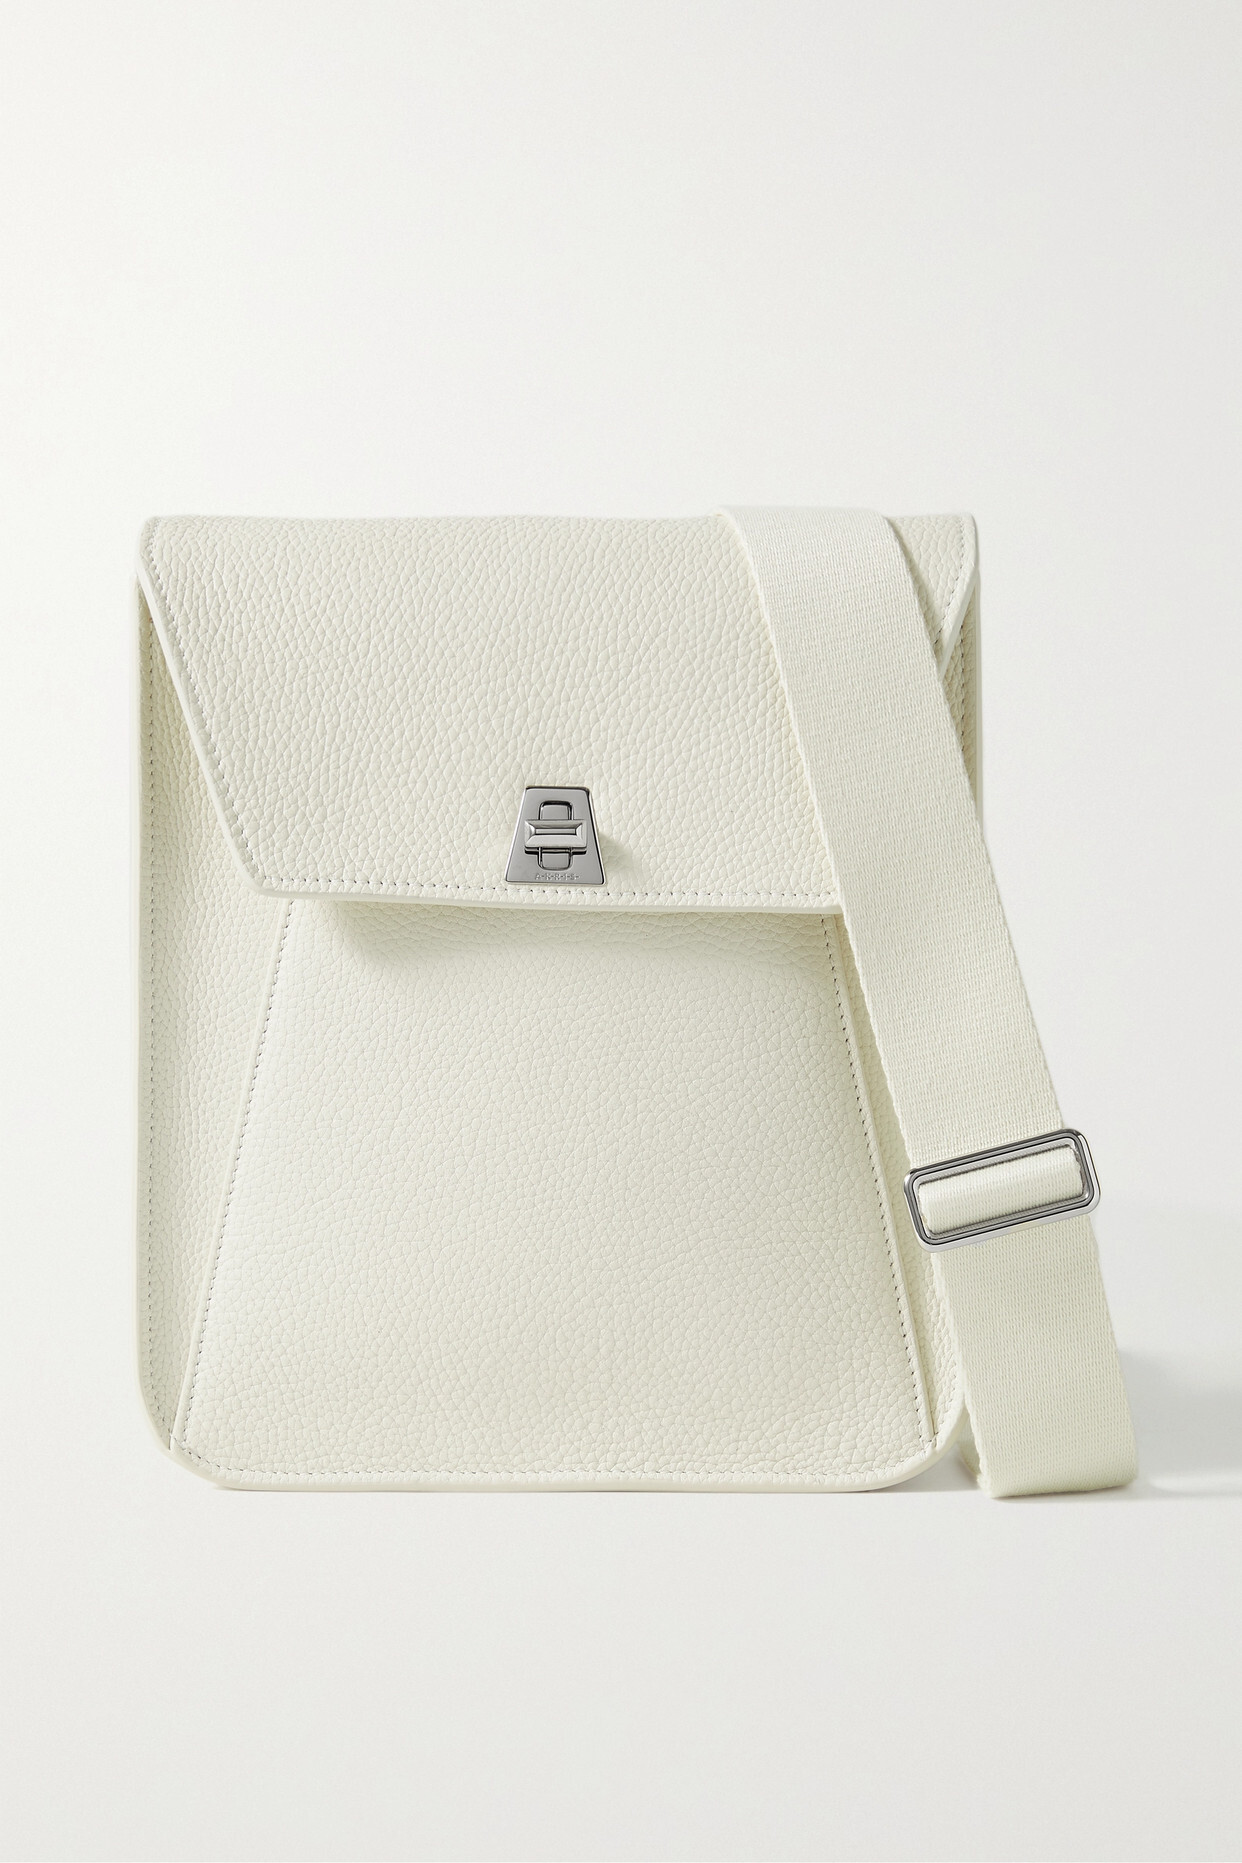 Akris - Anouk Small Textured-leather Shoulder Bag - White